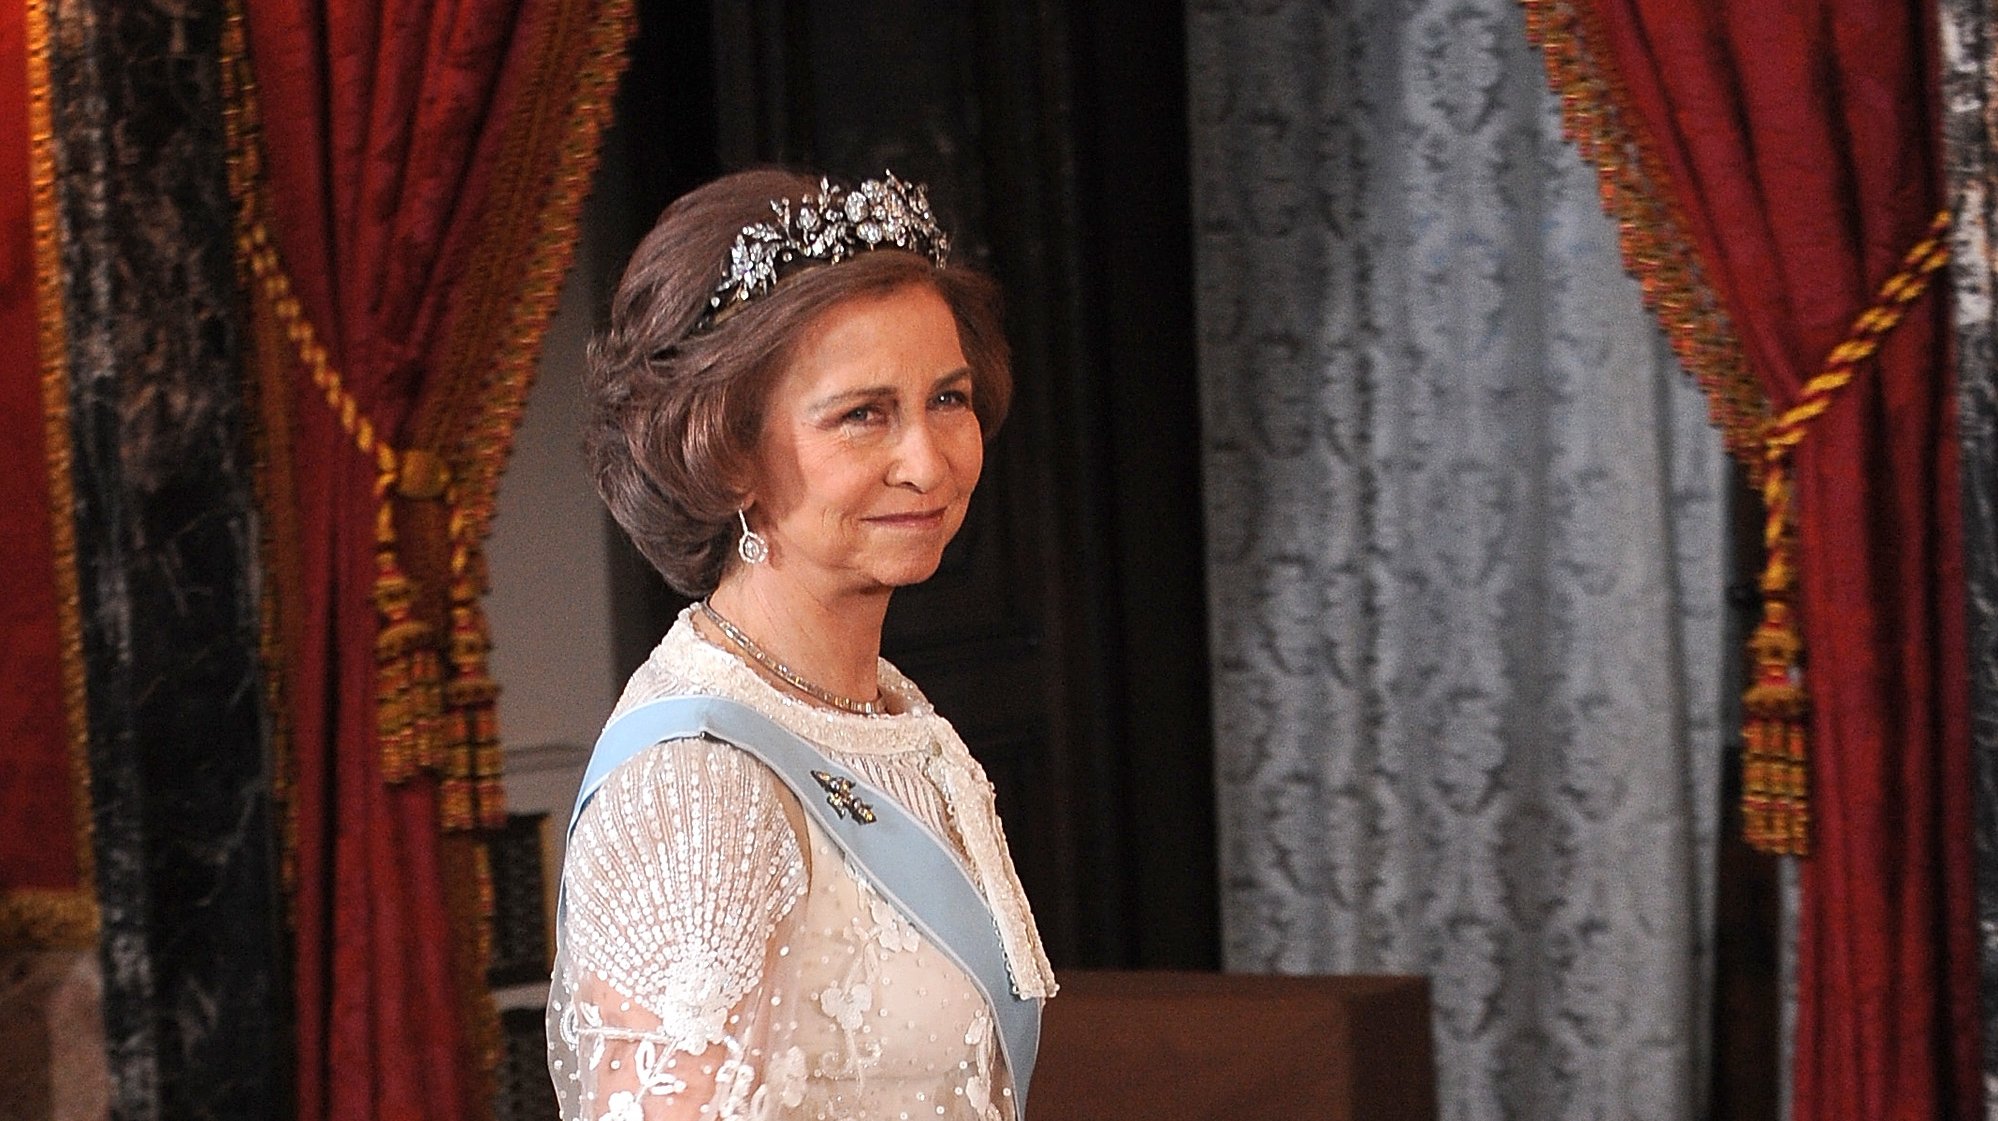 Sofia, princesa da Grécia, rainha de Espanha, e outros títulos que coroam uma vida dedicada à monarquia